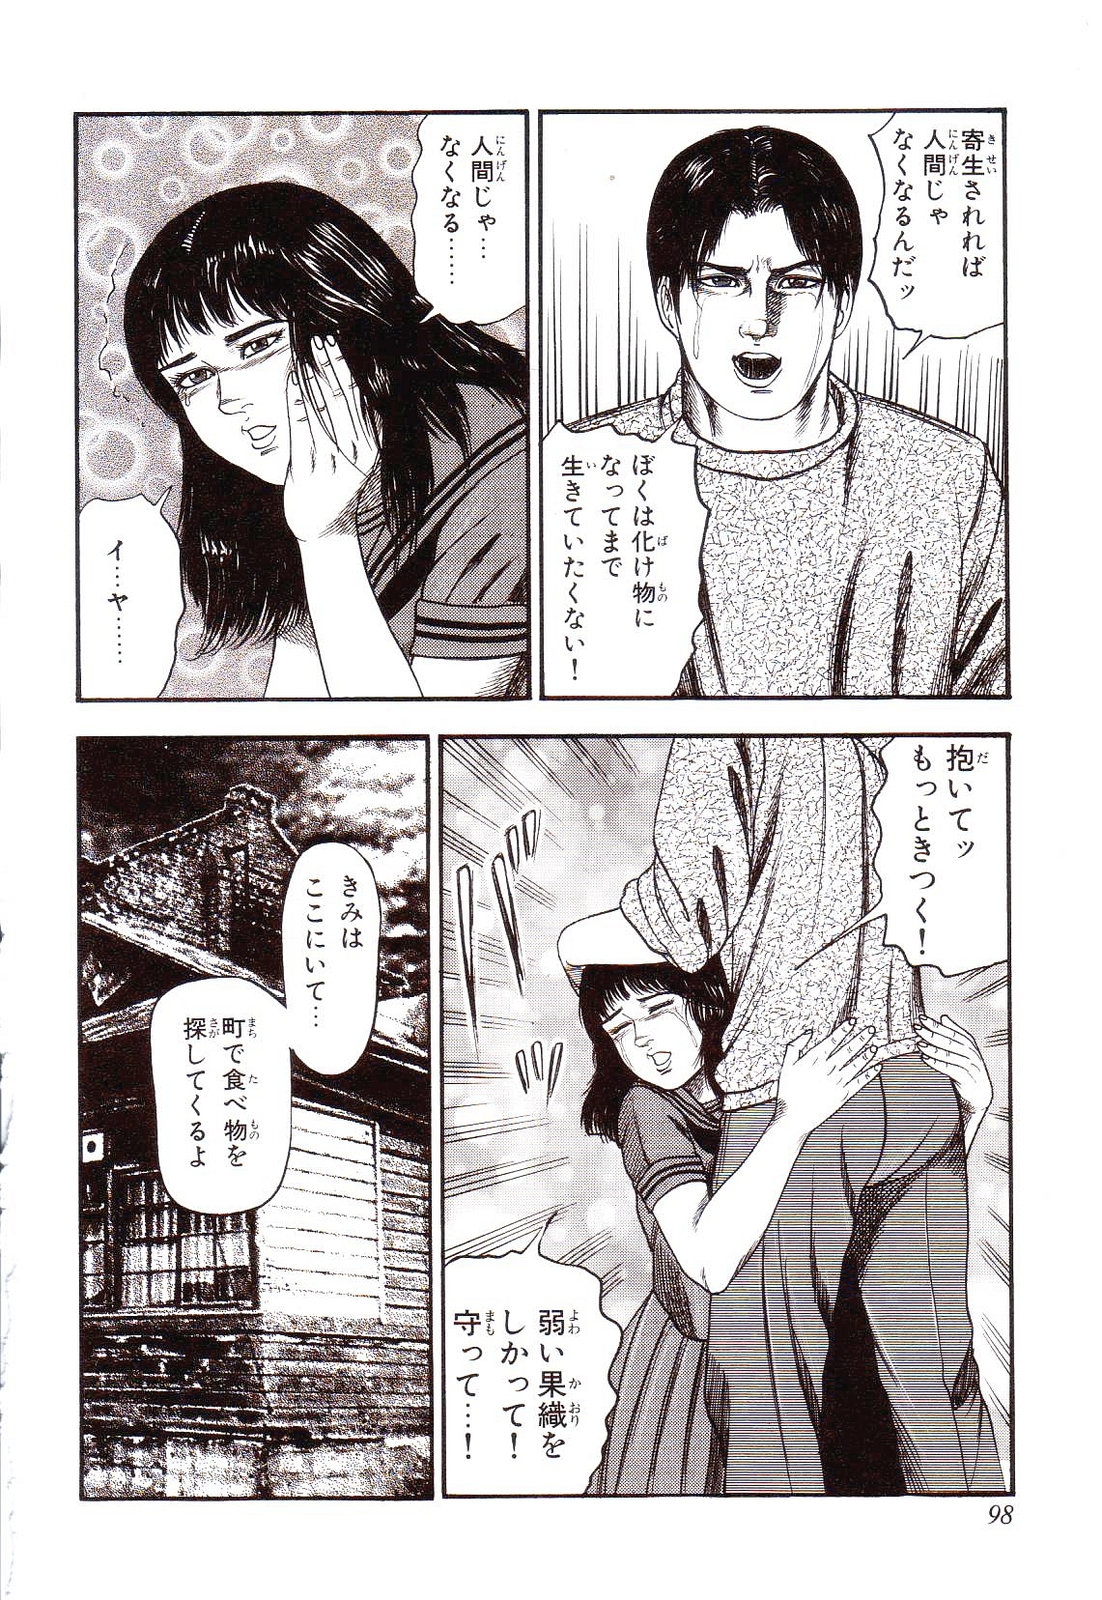 [Sanjou Tomomi] Inu ni Naritai -kyoufu manga shugyoku sakuhinshiyuu- 102